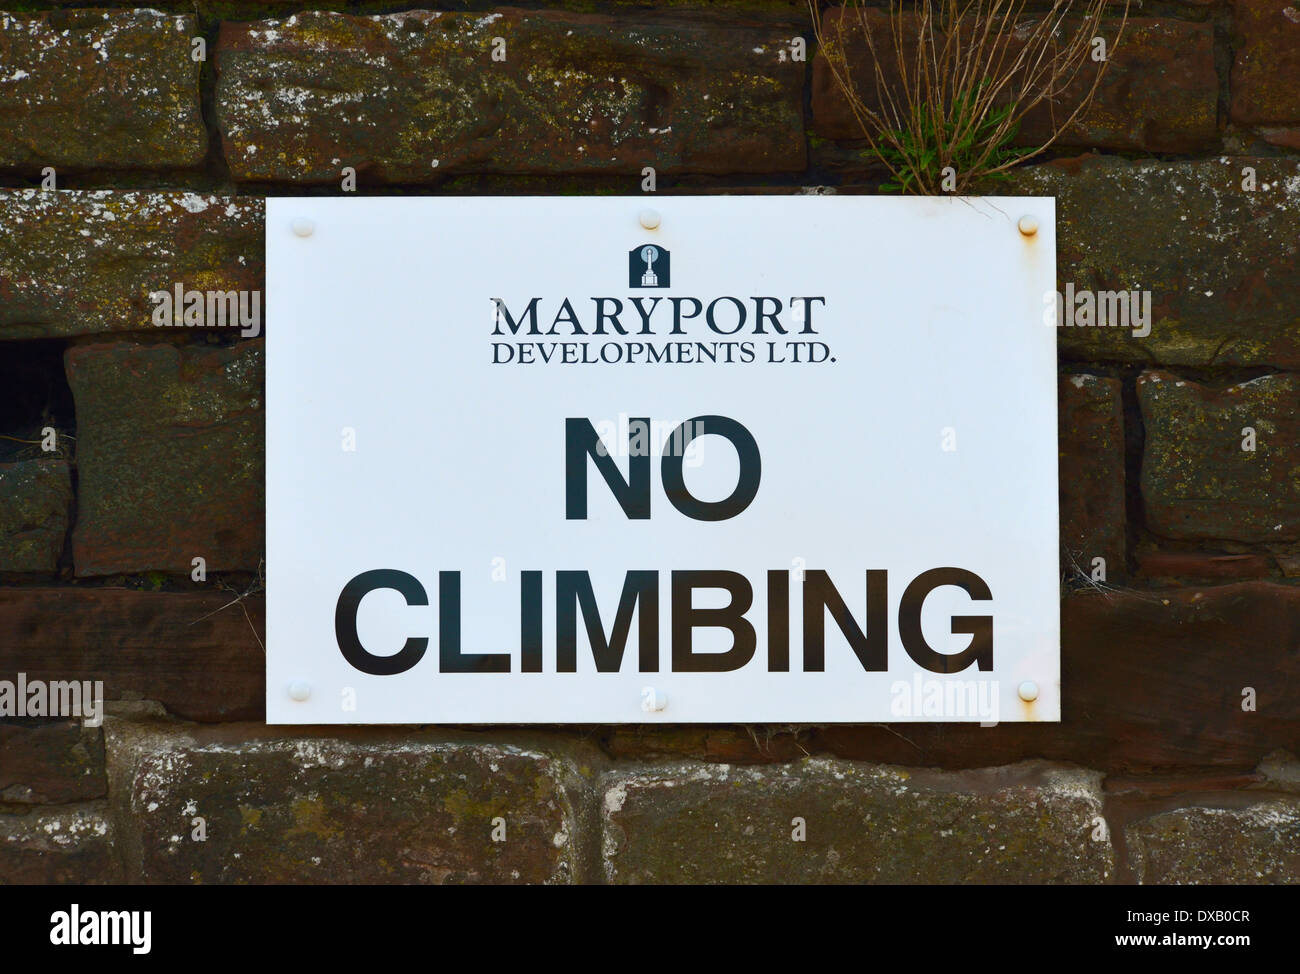 Señal de advertencia, "ACONTECIMIENTOS ARYPORT LTD. Ninguna escalada' del puerto, Maryport, Cumbria, Inglaterra, Reino Unido, Europa. Foto de stock